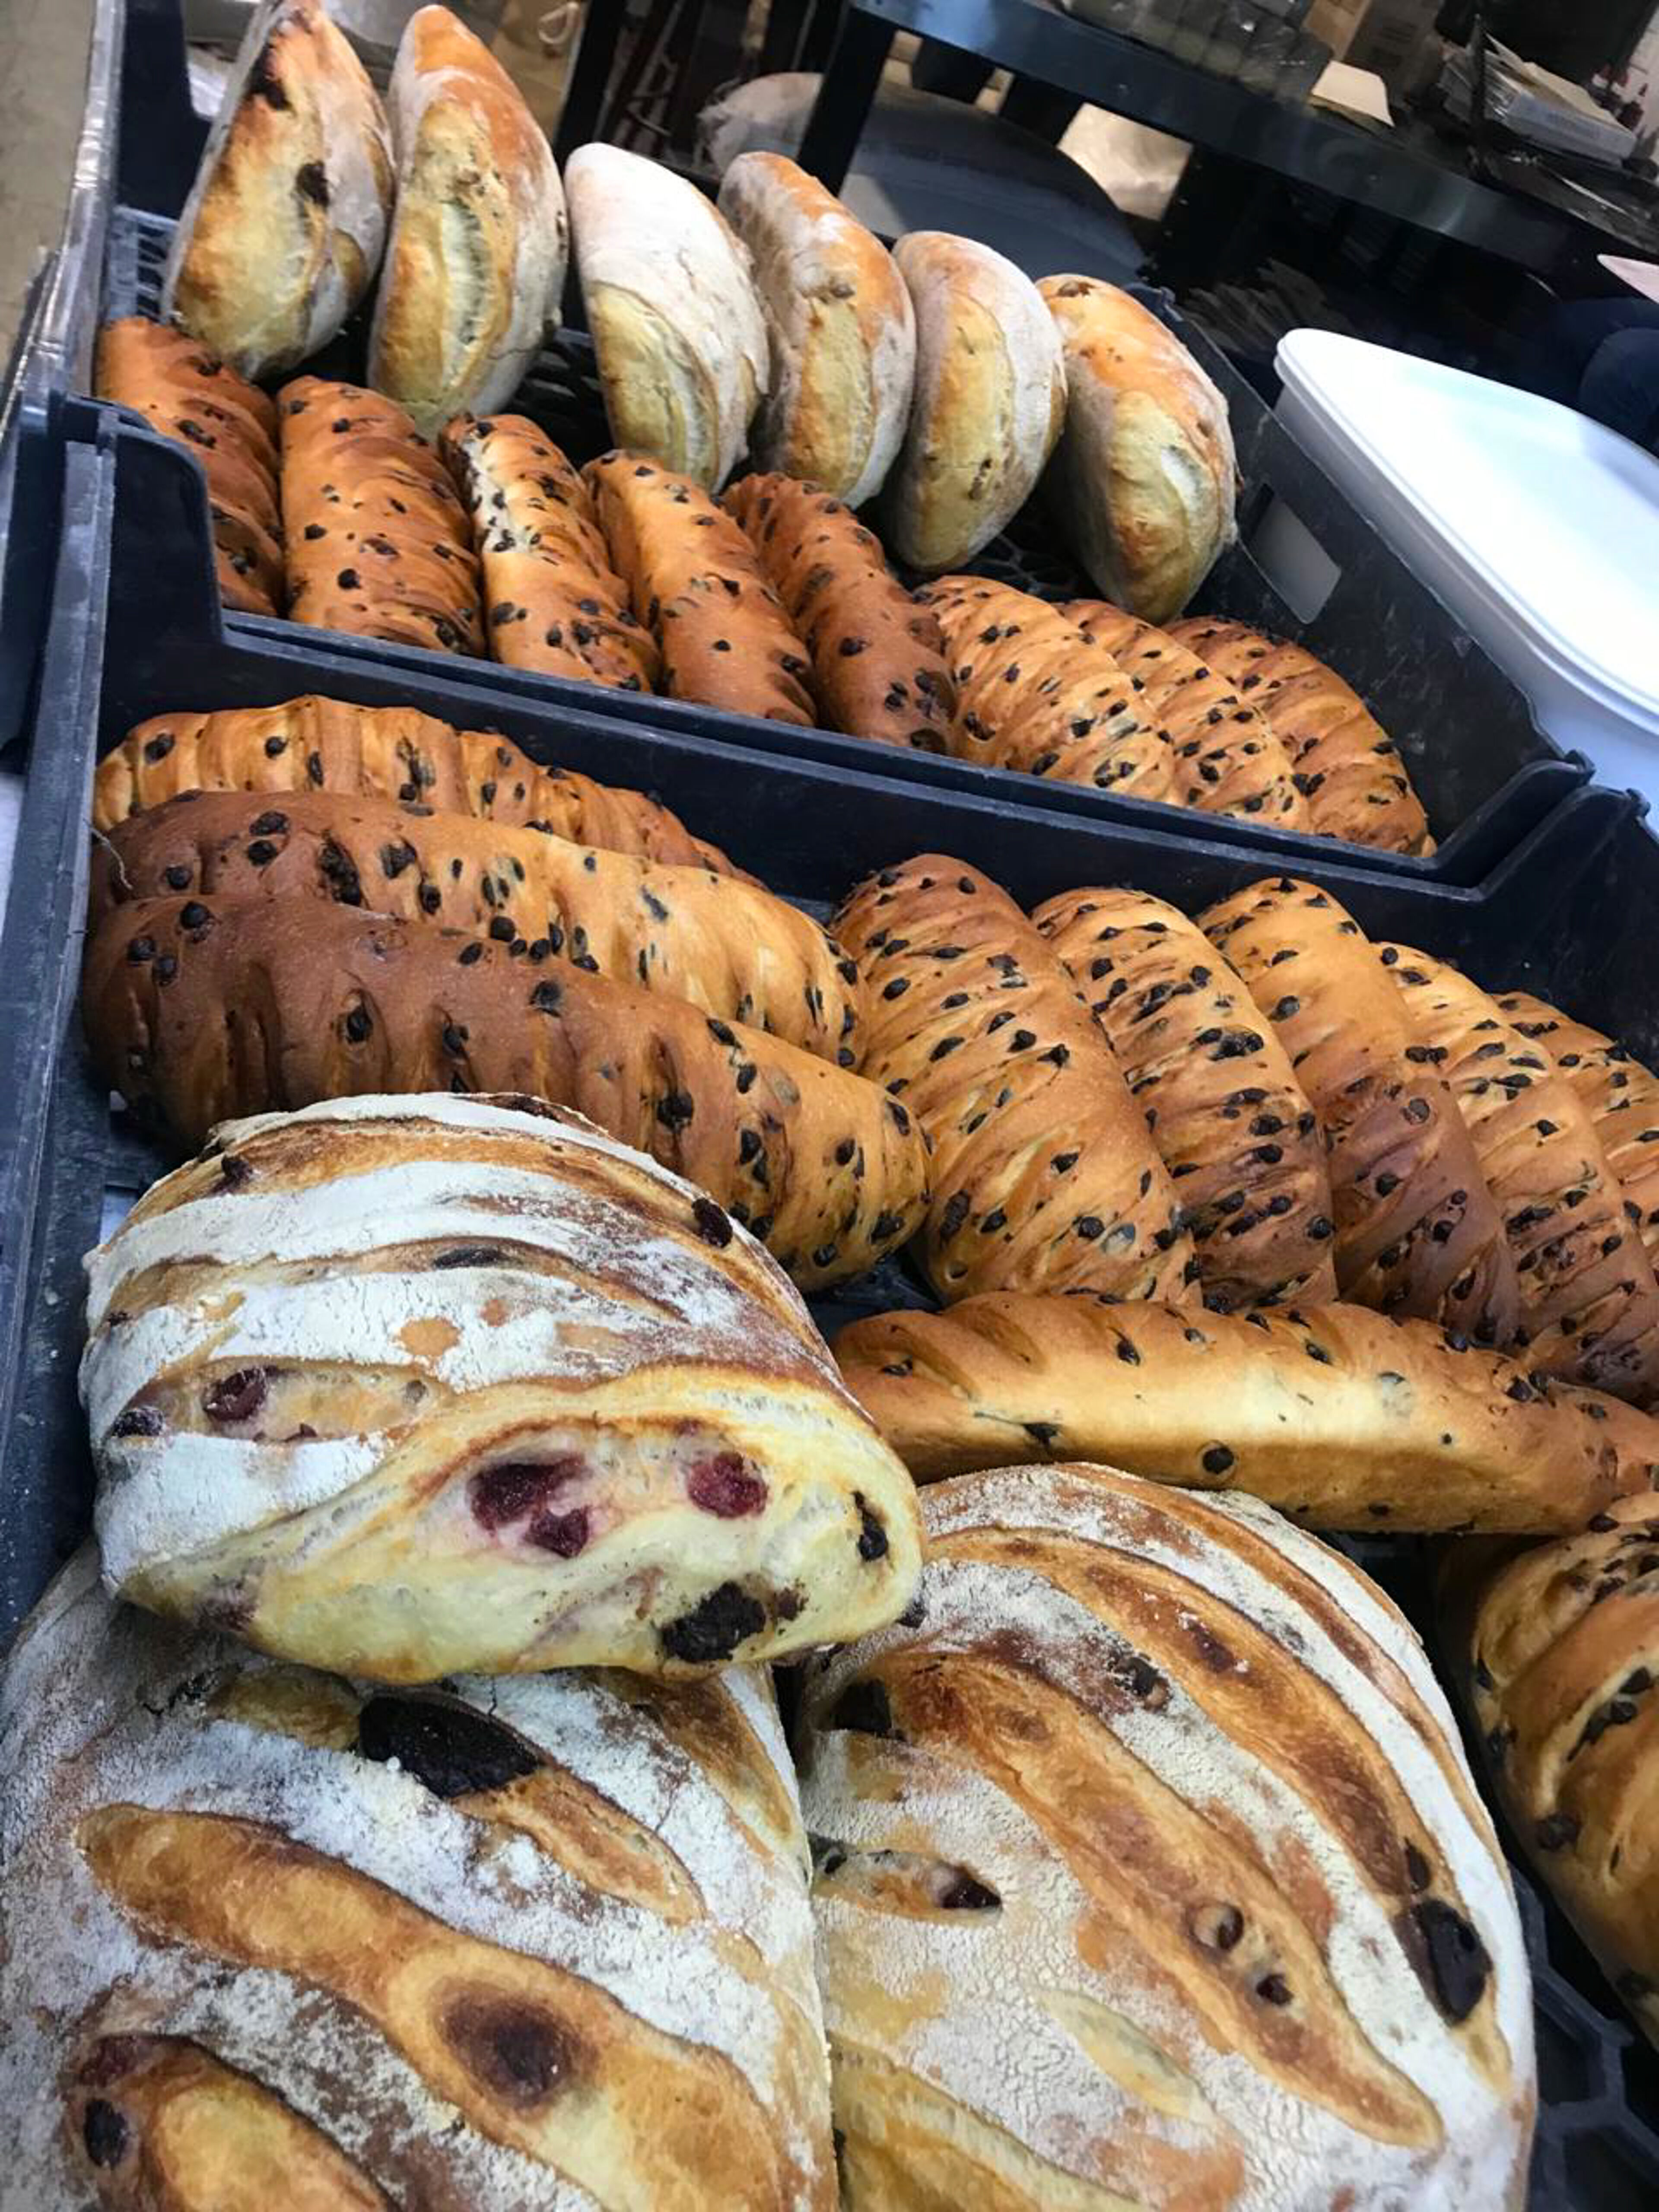 Diversos tipos de pan, incluyendo panes lisos, con semillas y con frutas, mostrados en una panadería.

